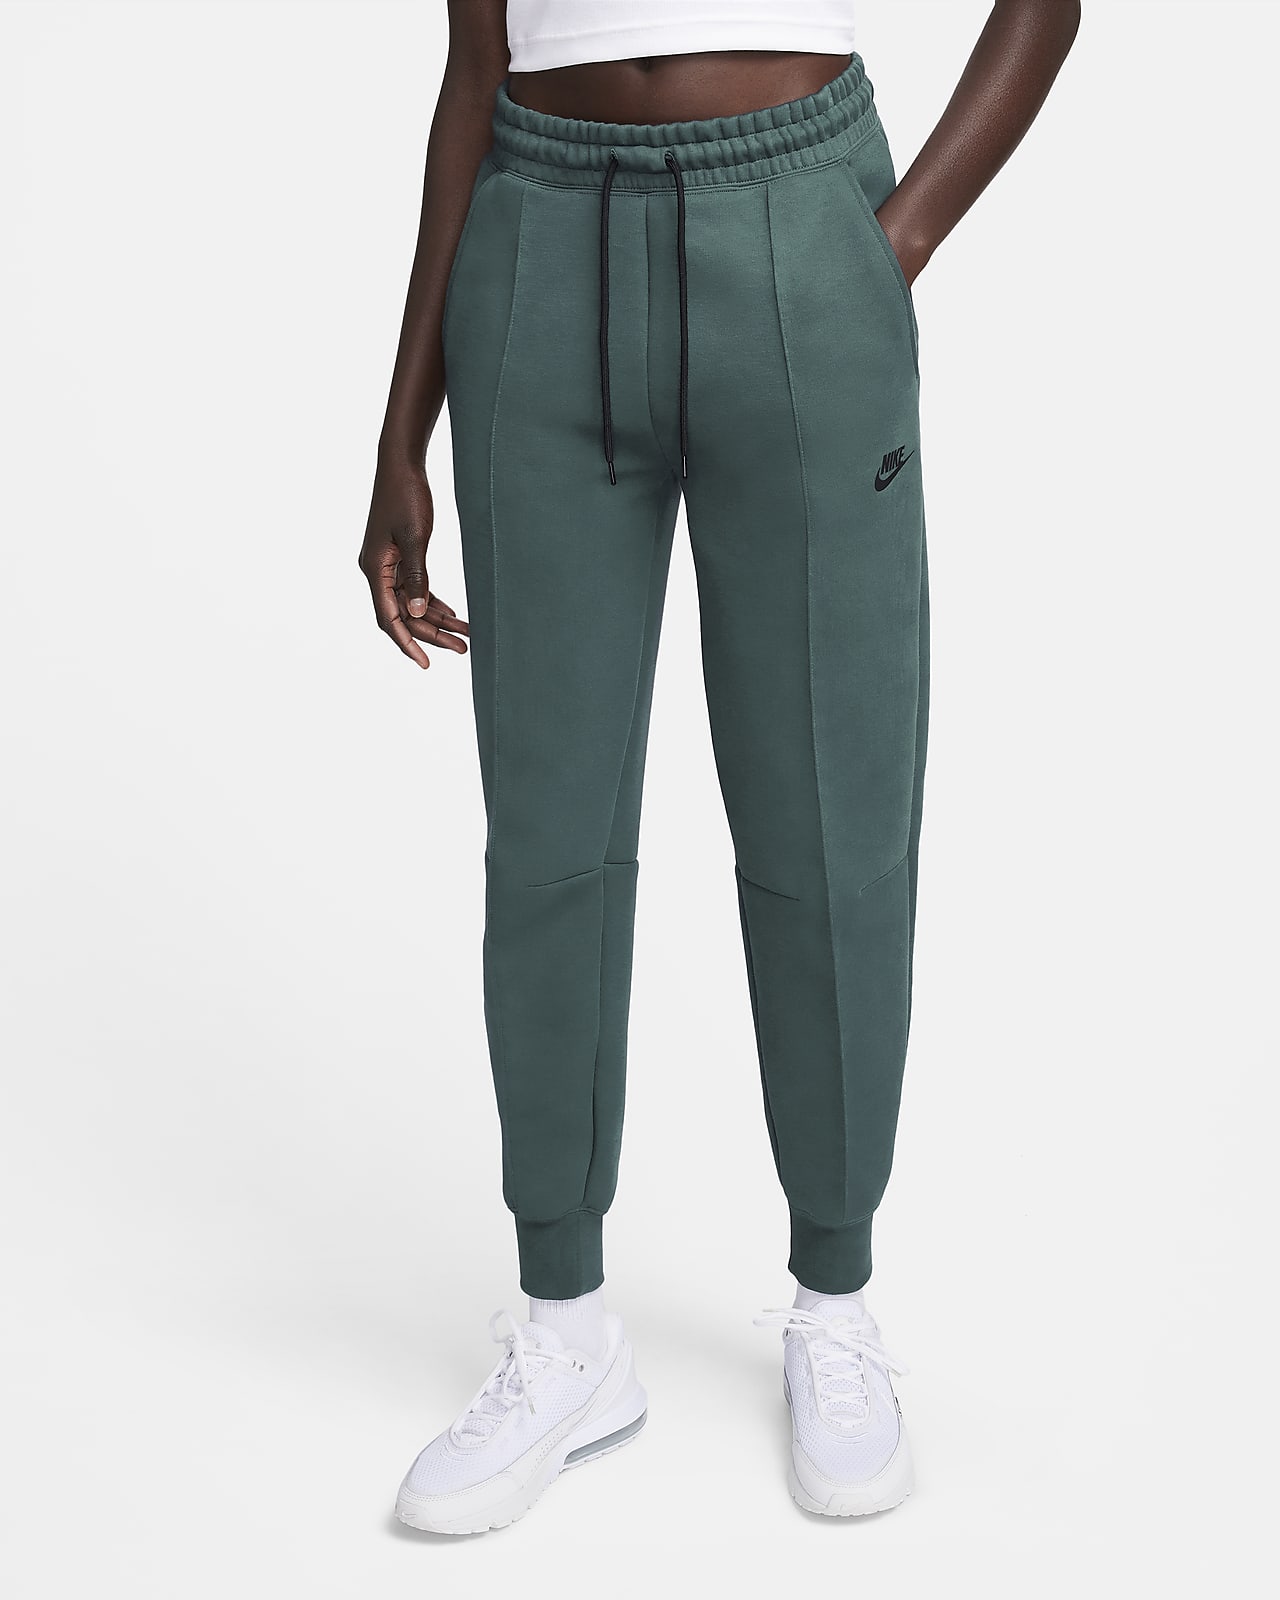 Γυναικείο παντελόνι φόρμας μεσαίου ύψους Nike Sportswear Tech Fleece